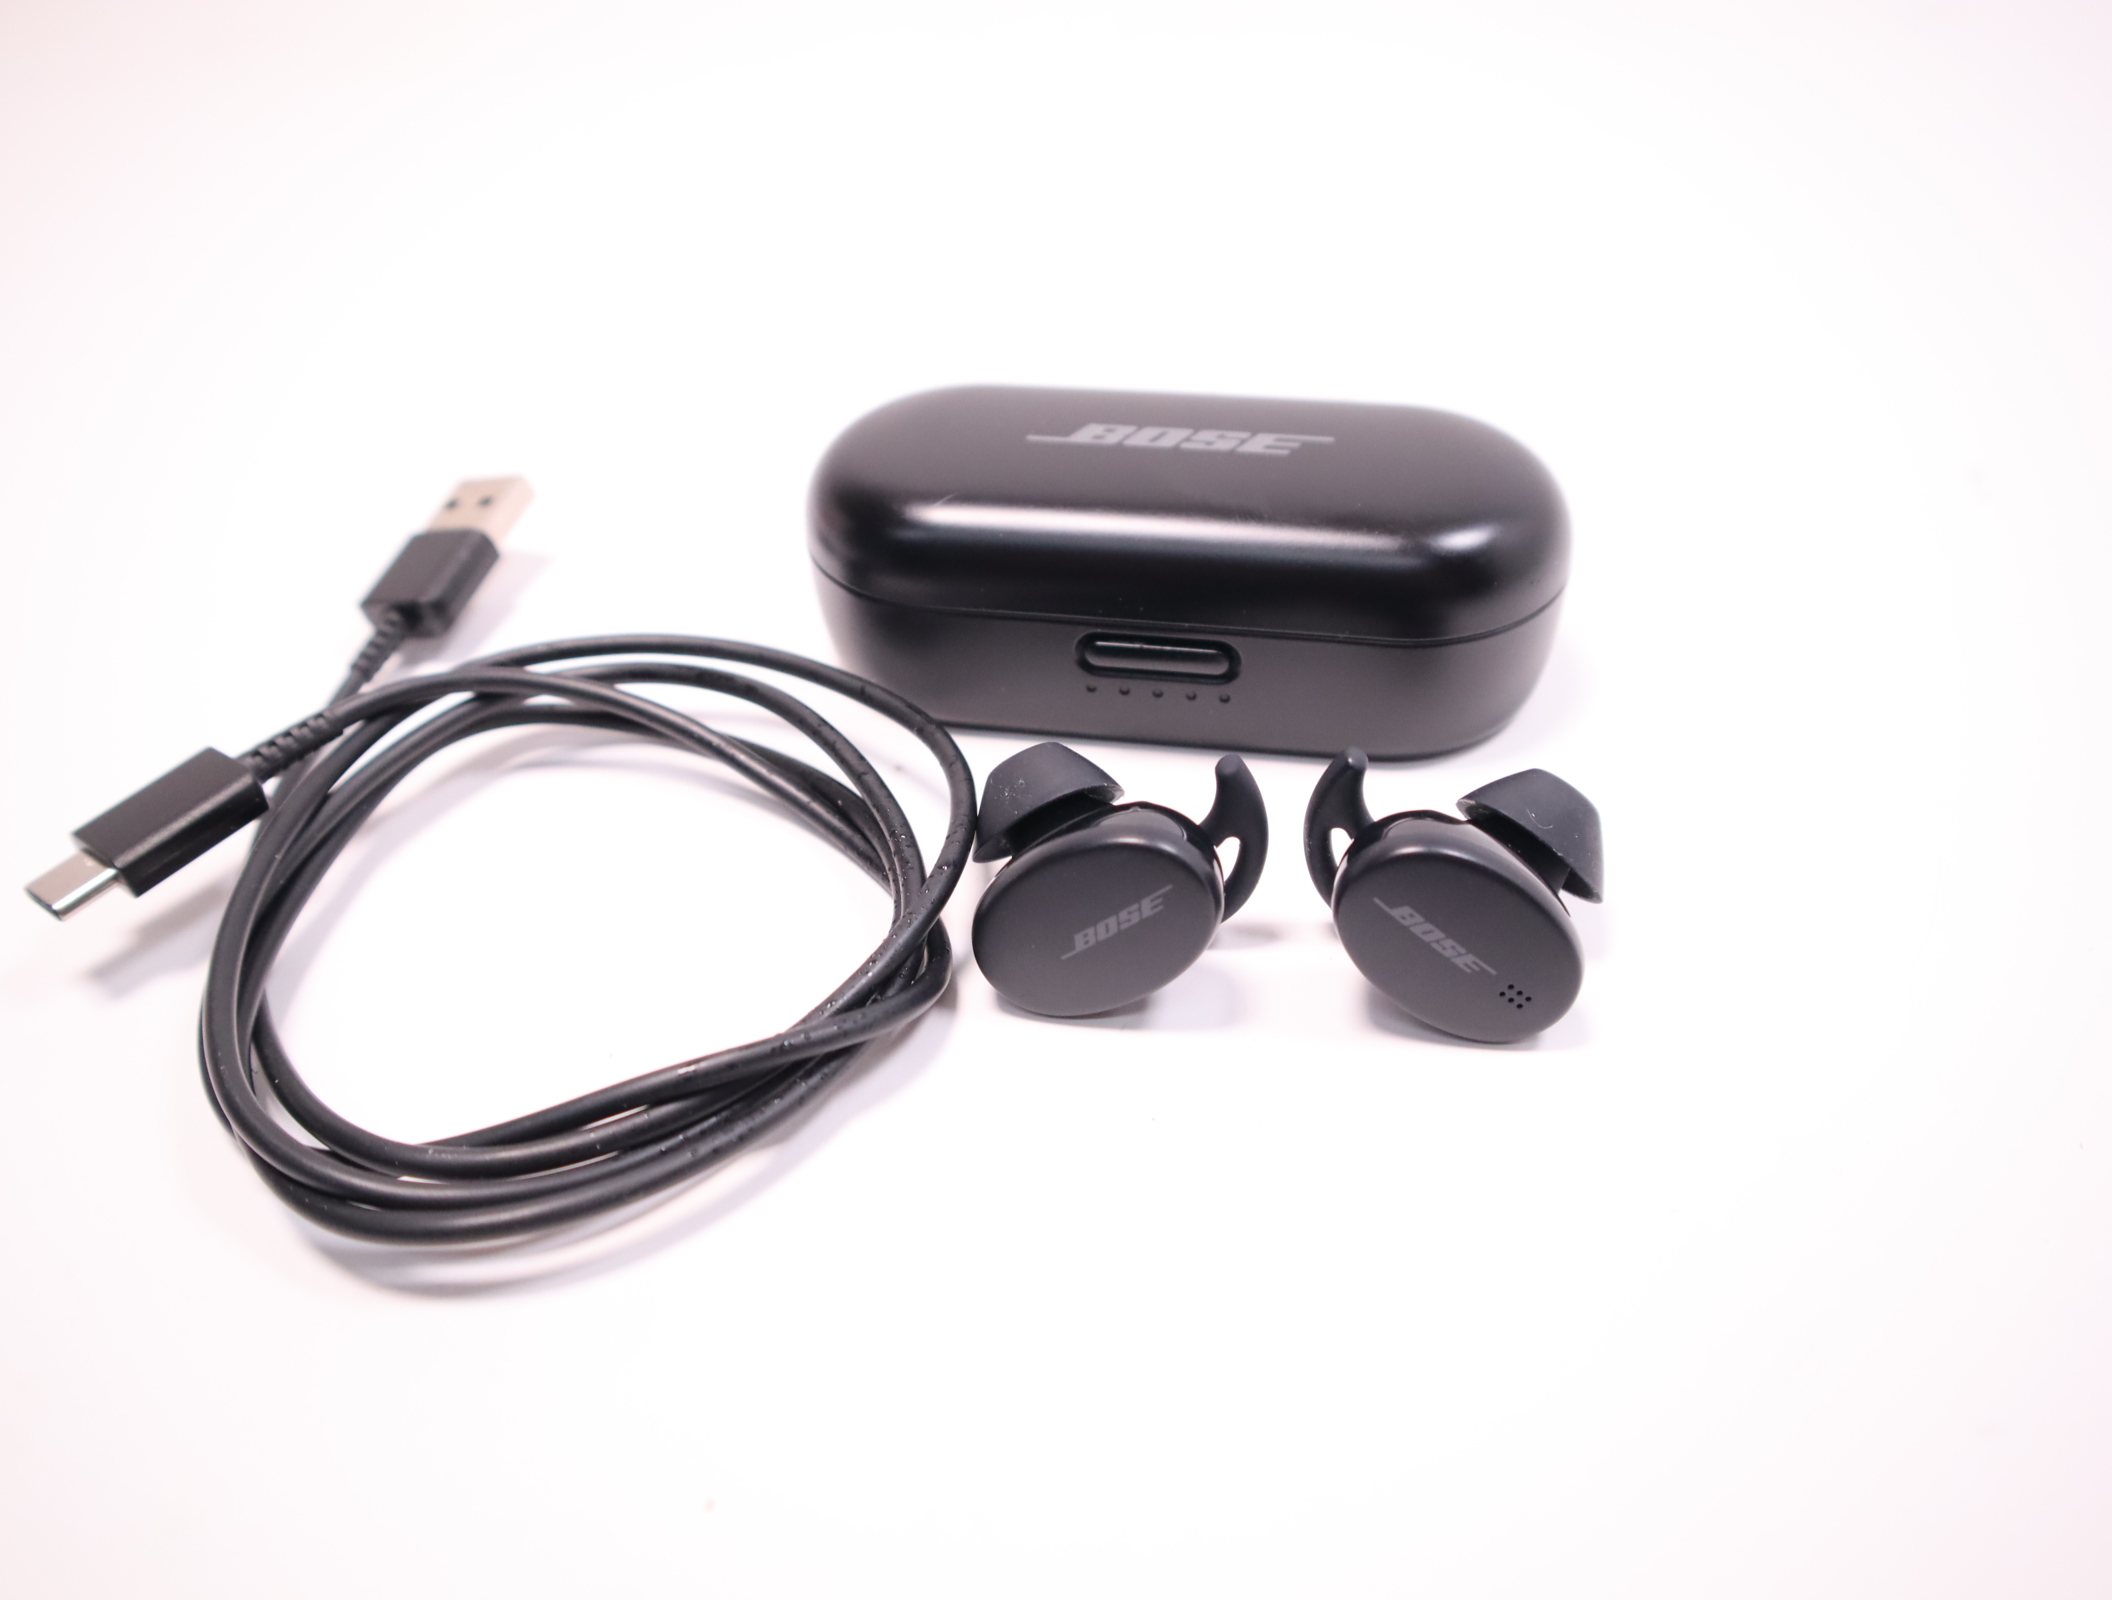  Bose Sport Earbuds - Wireless Earphones - Bluetooth In